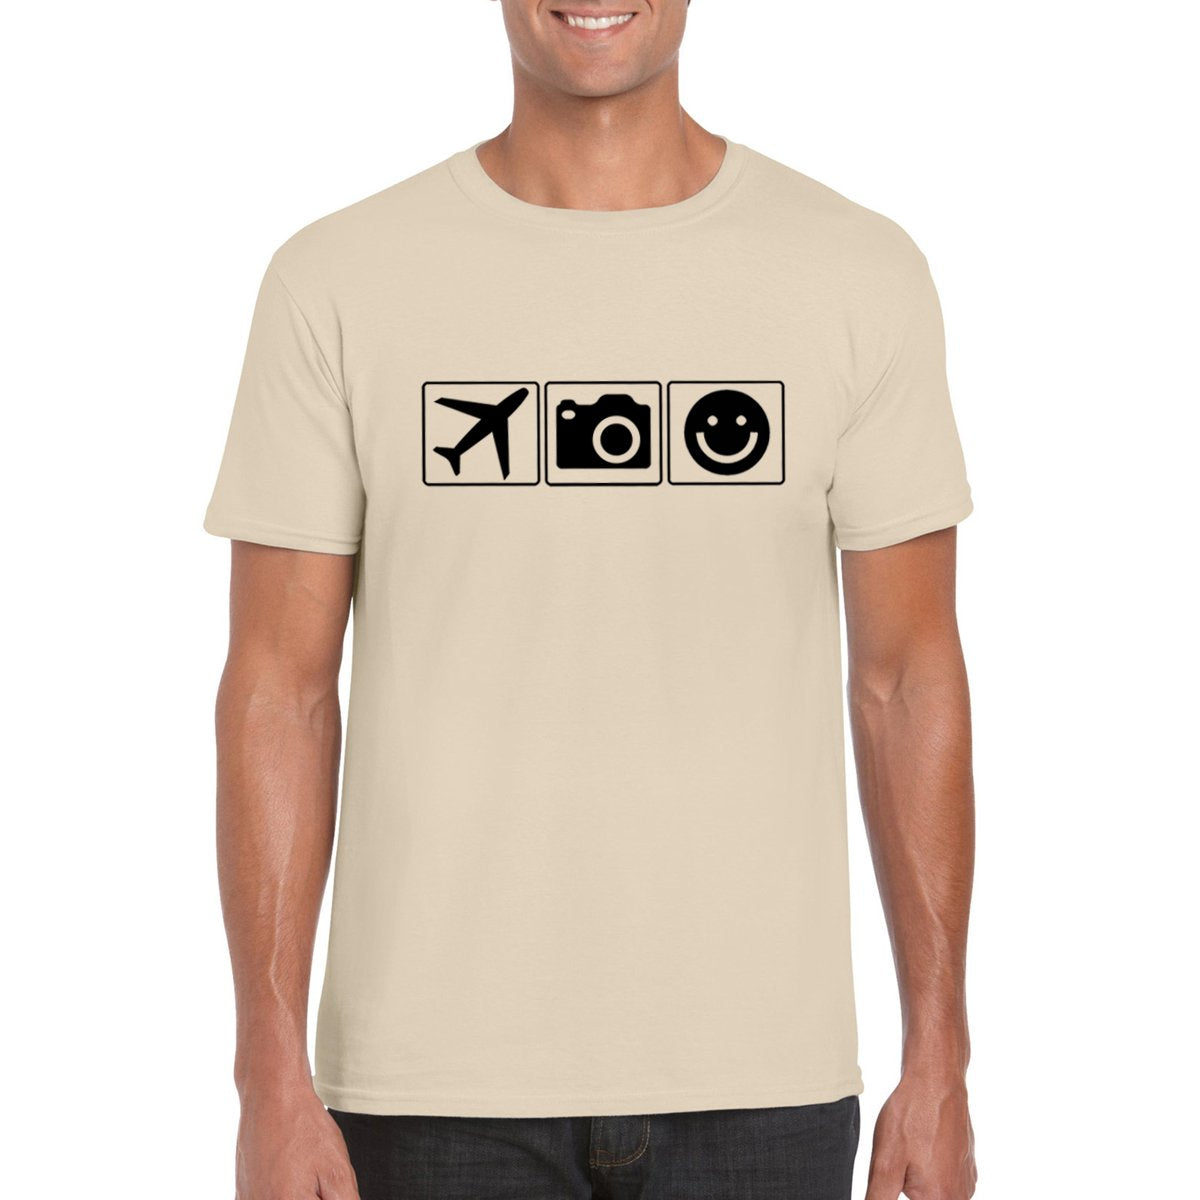 PLANE CAMERA SMILE Unisex T-Shirt